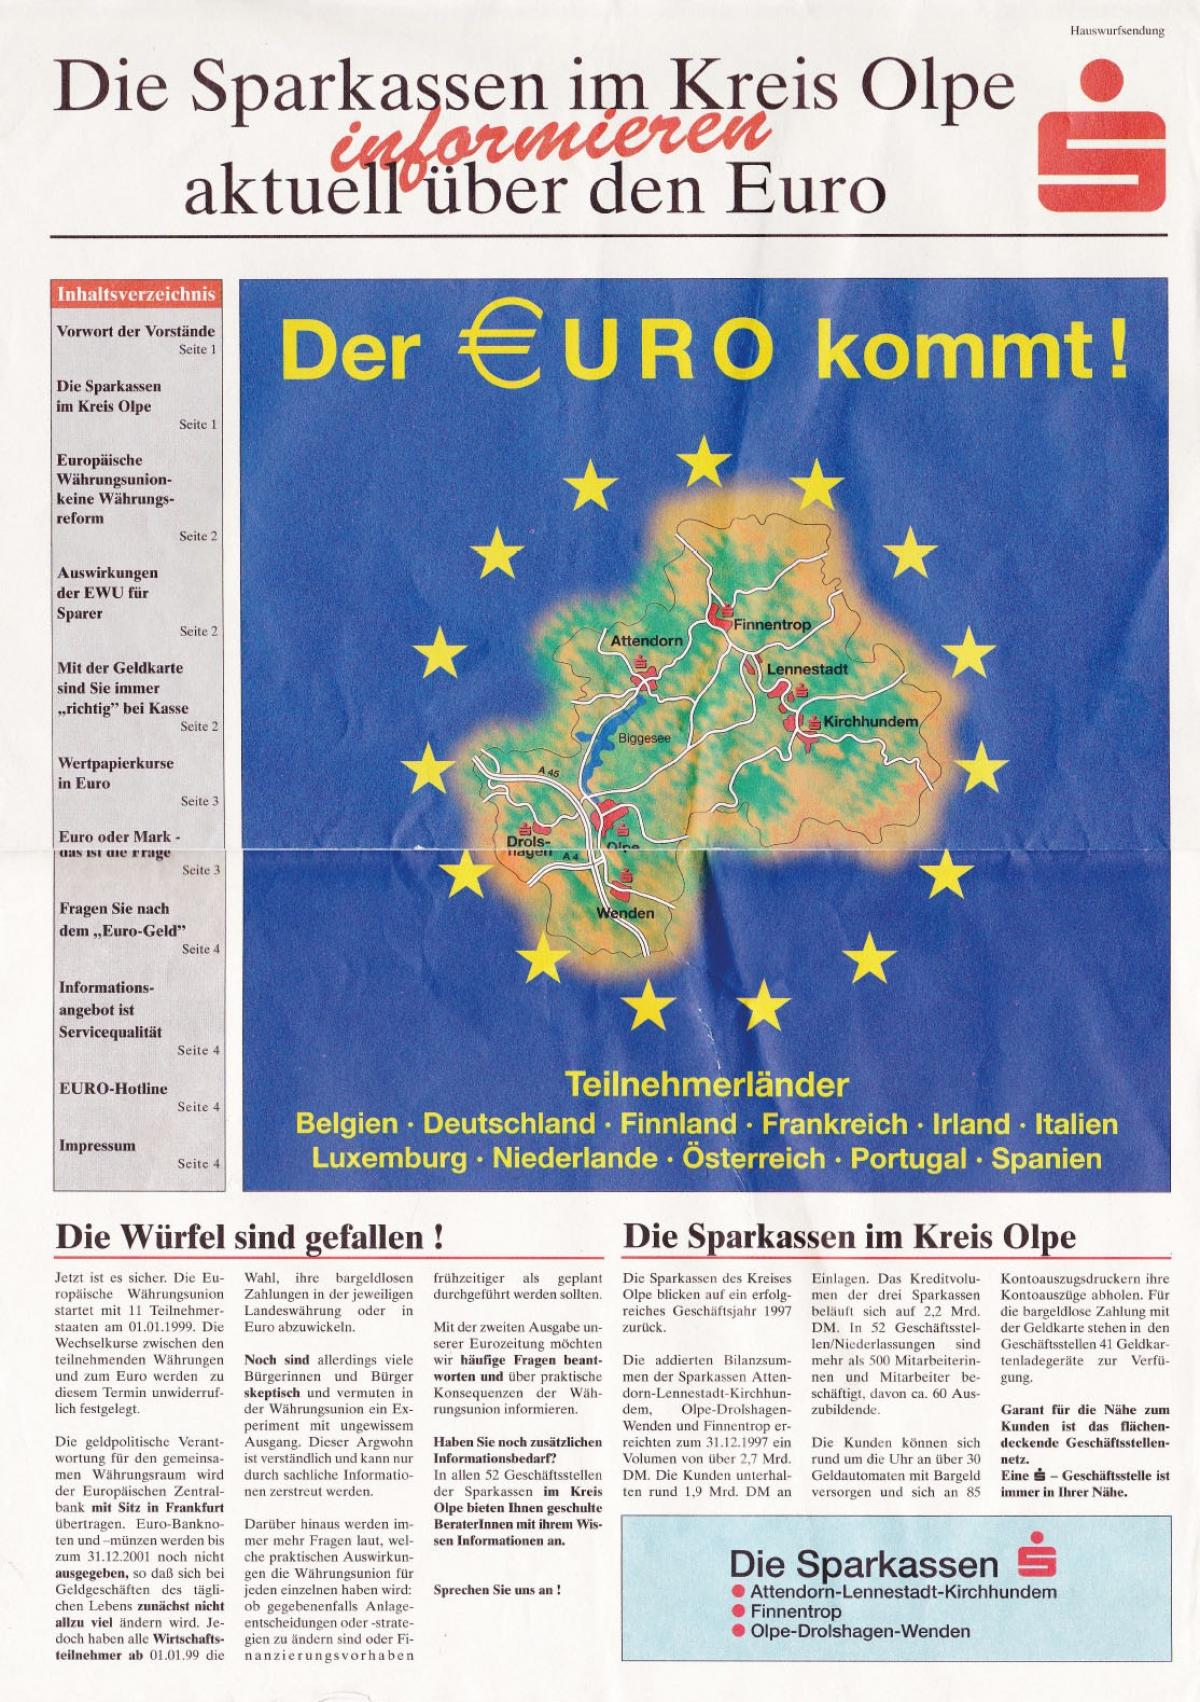 Mit einer eigenen Kundenzeitung informierten die Sparkassen im Kreis über die Währungsumstellung vor 20 Jahren. von SPK Olpe/M. Feldmann